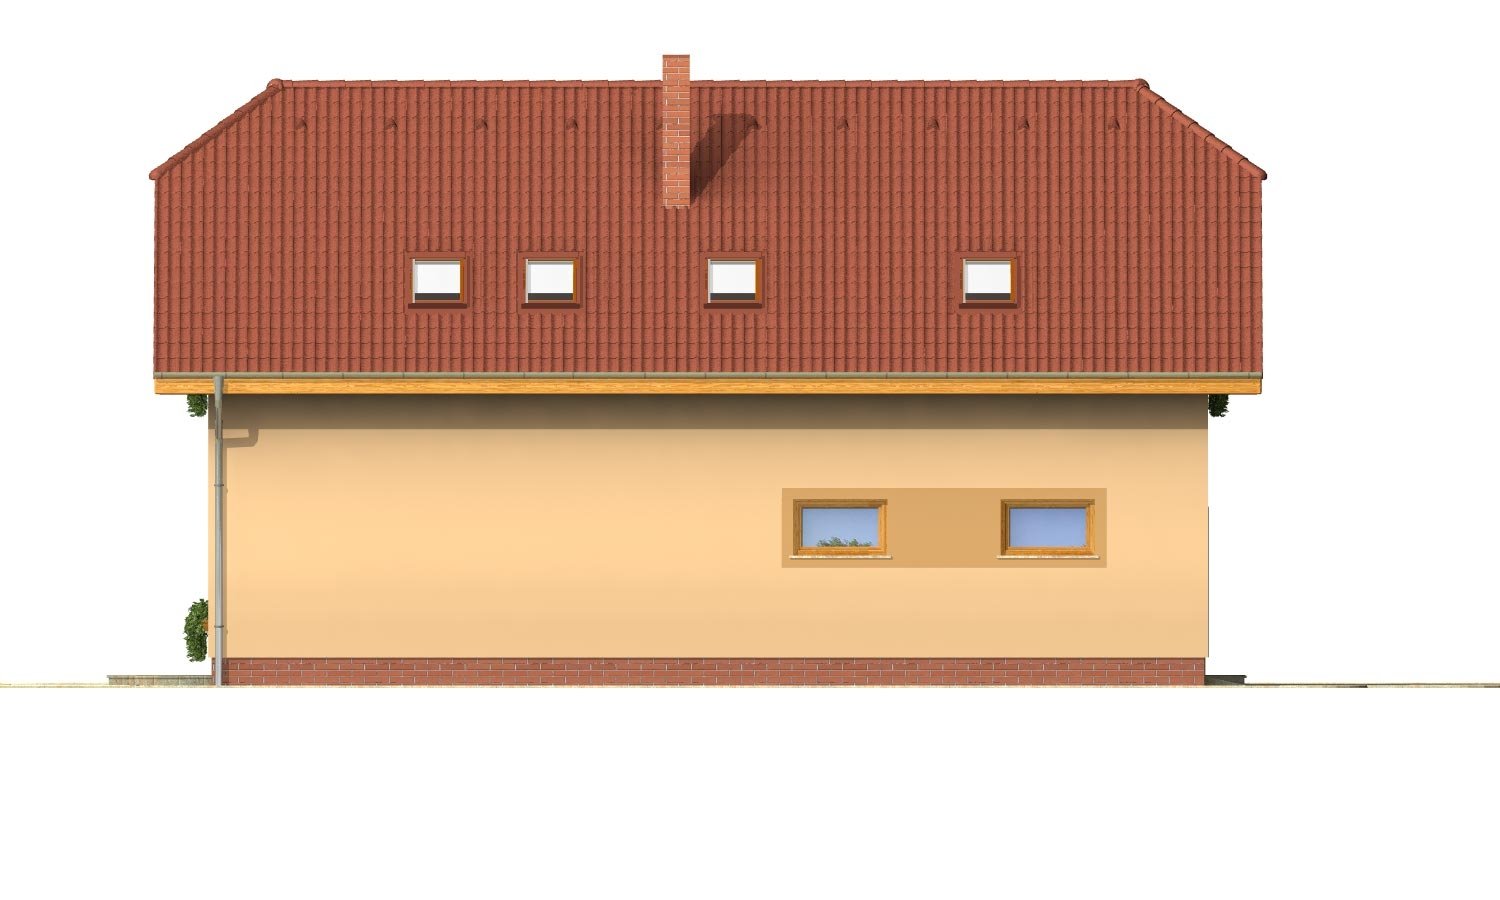 Pohľad 2. - Úzký rodinný dům s garáží a terasou.